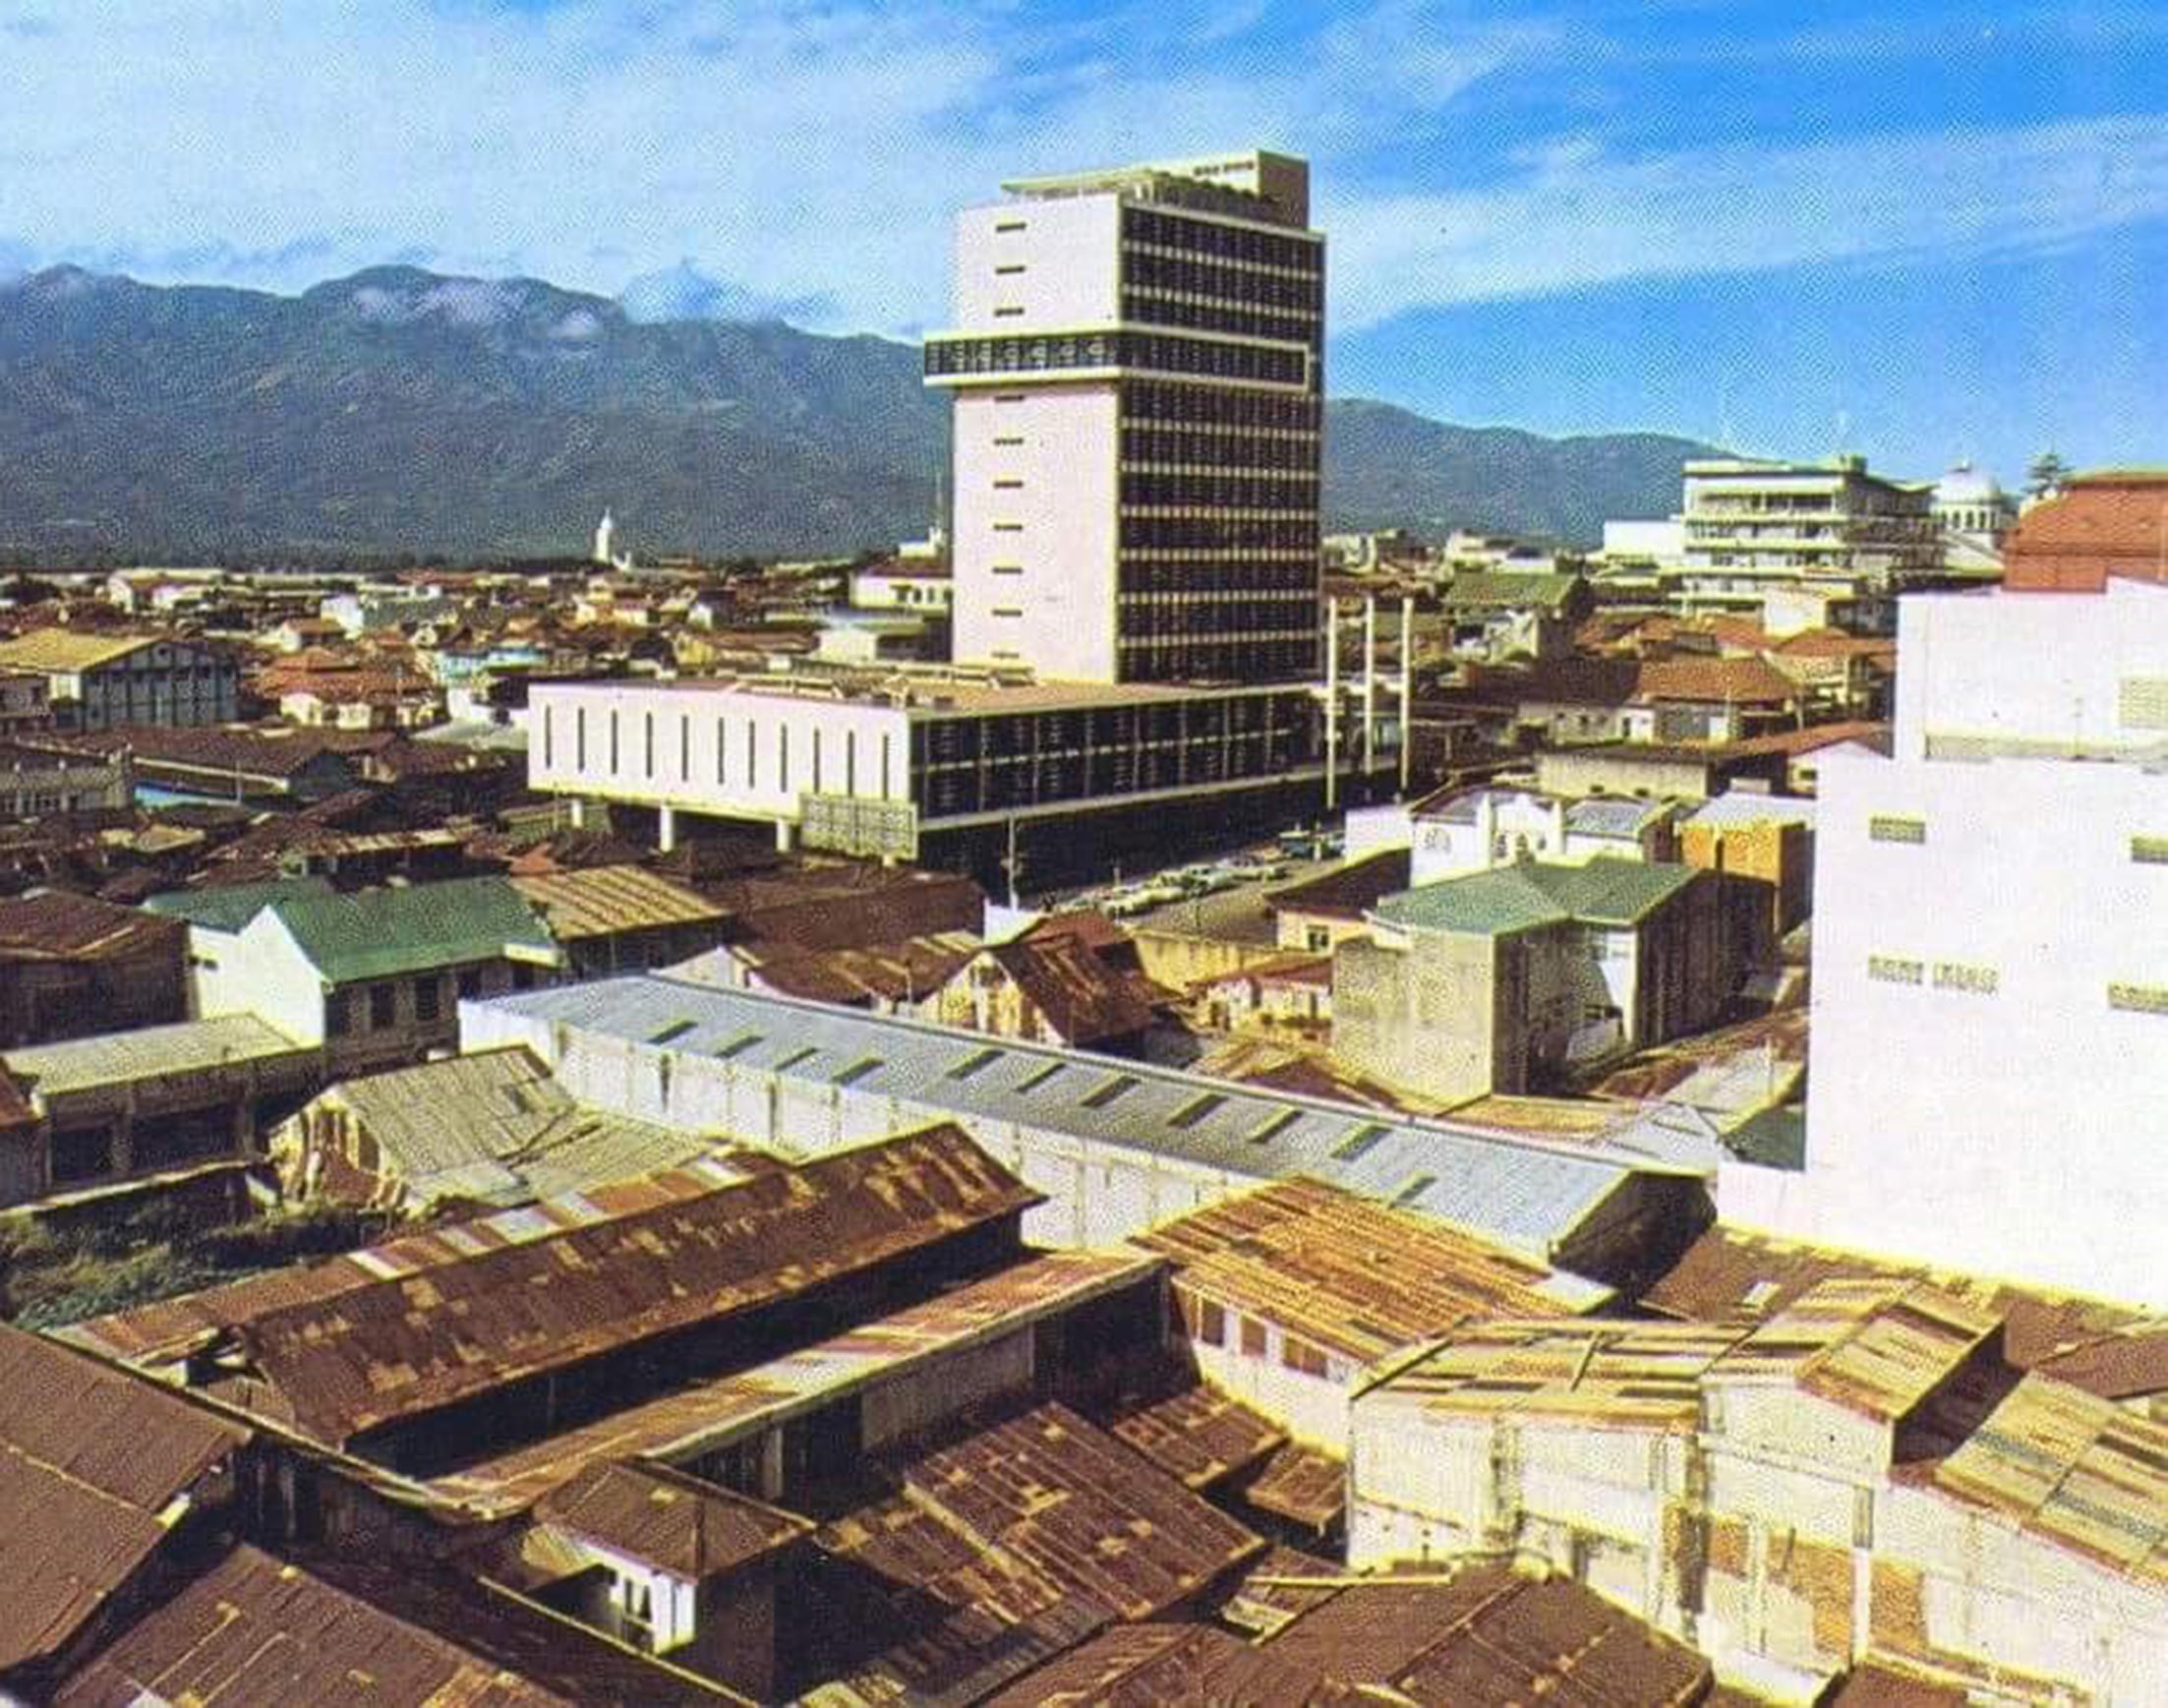 Edificio Laureano Echandi Vicente, hito histórico y arquitectónico de los años sesenta en Costa Rica Luis Alberto Monge Calvo vista del edificio de la CCSS cerca de los años setenta